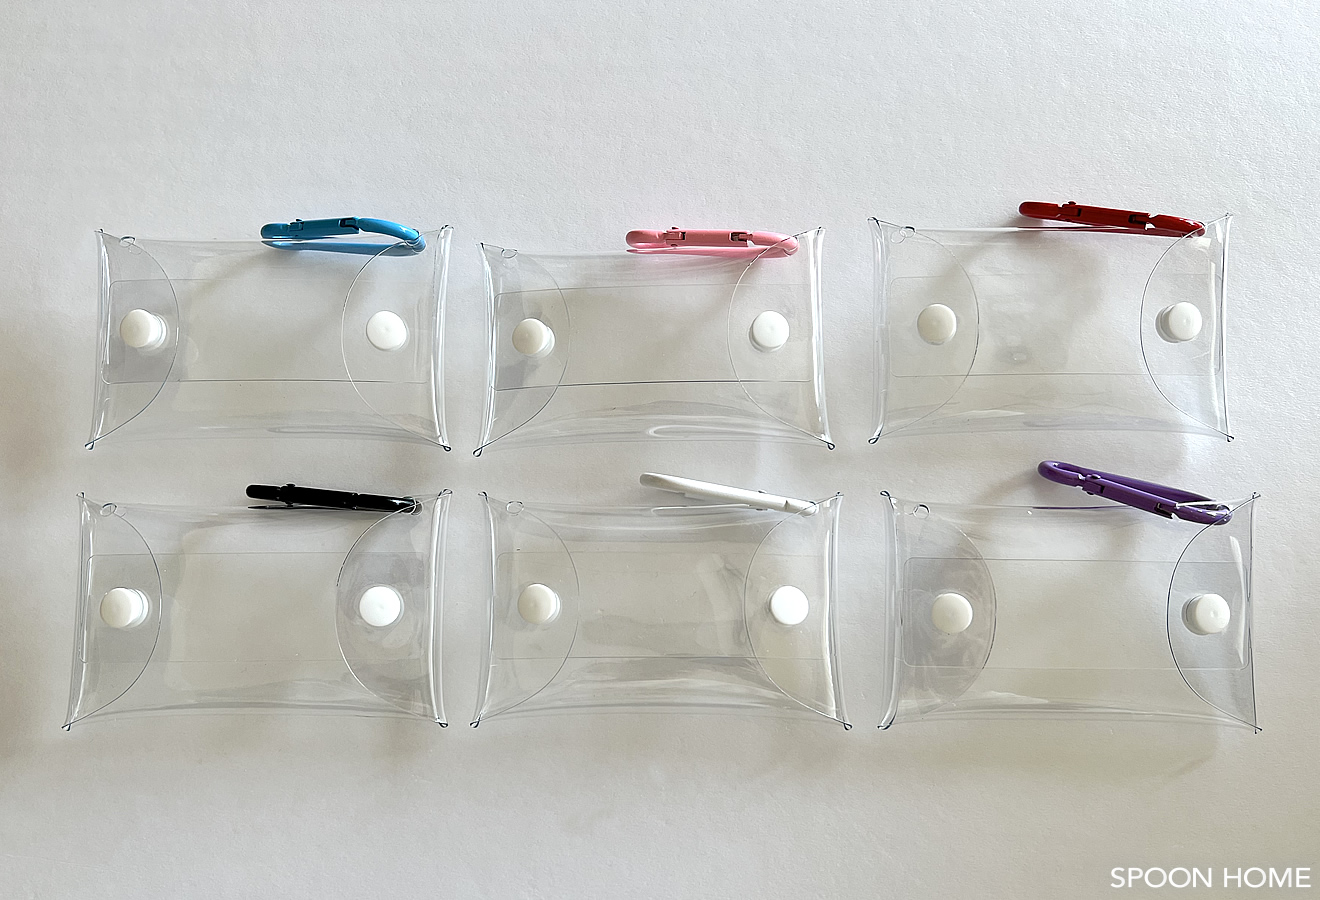 透明な小物ケース「カラビナ付きクリアポーチ」が便利。ガチャガチャのコレクション入れに